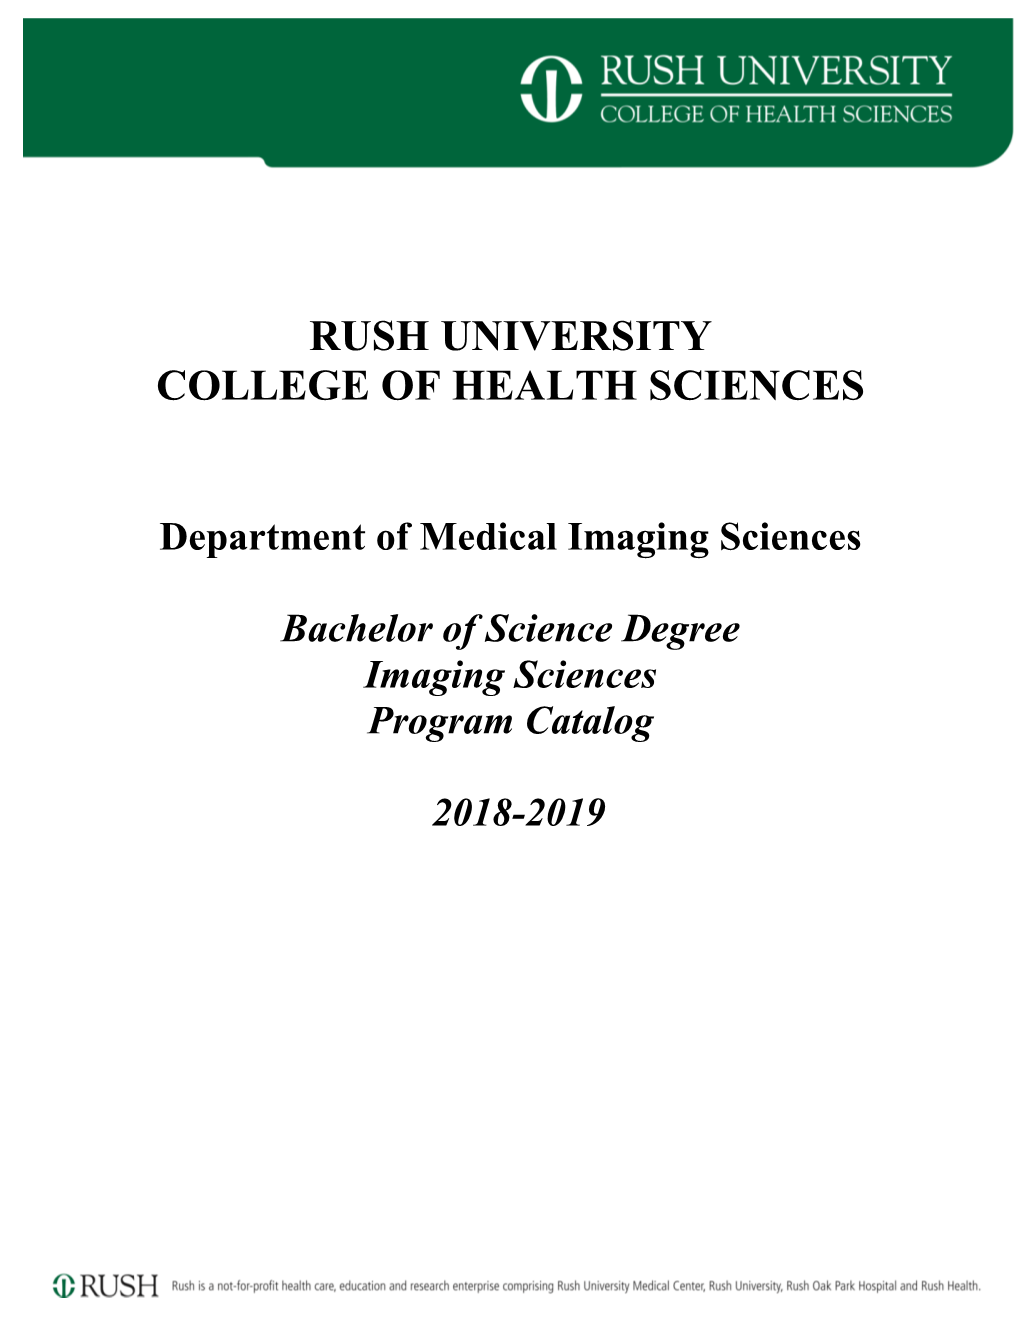 BS in Imaging Sciences